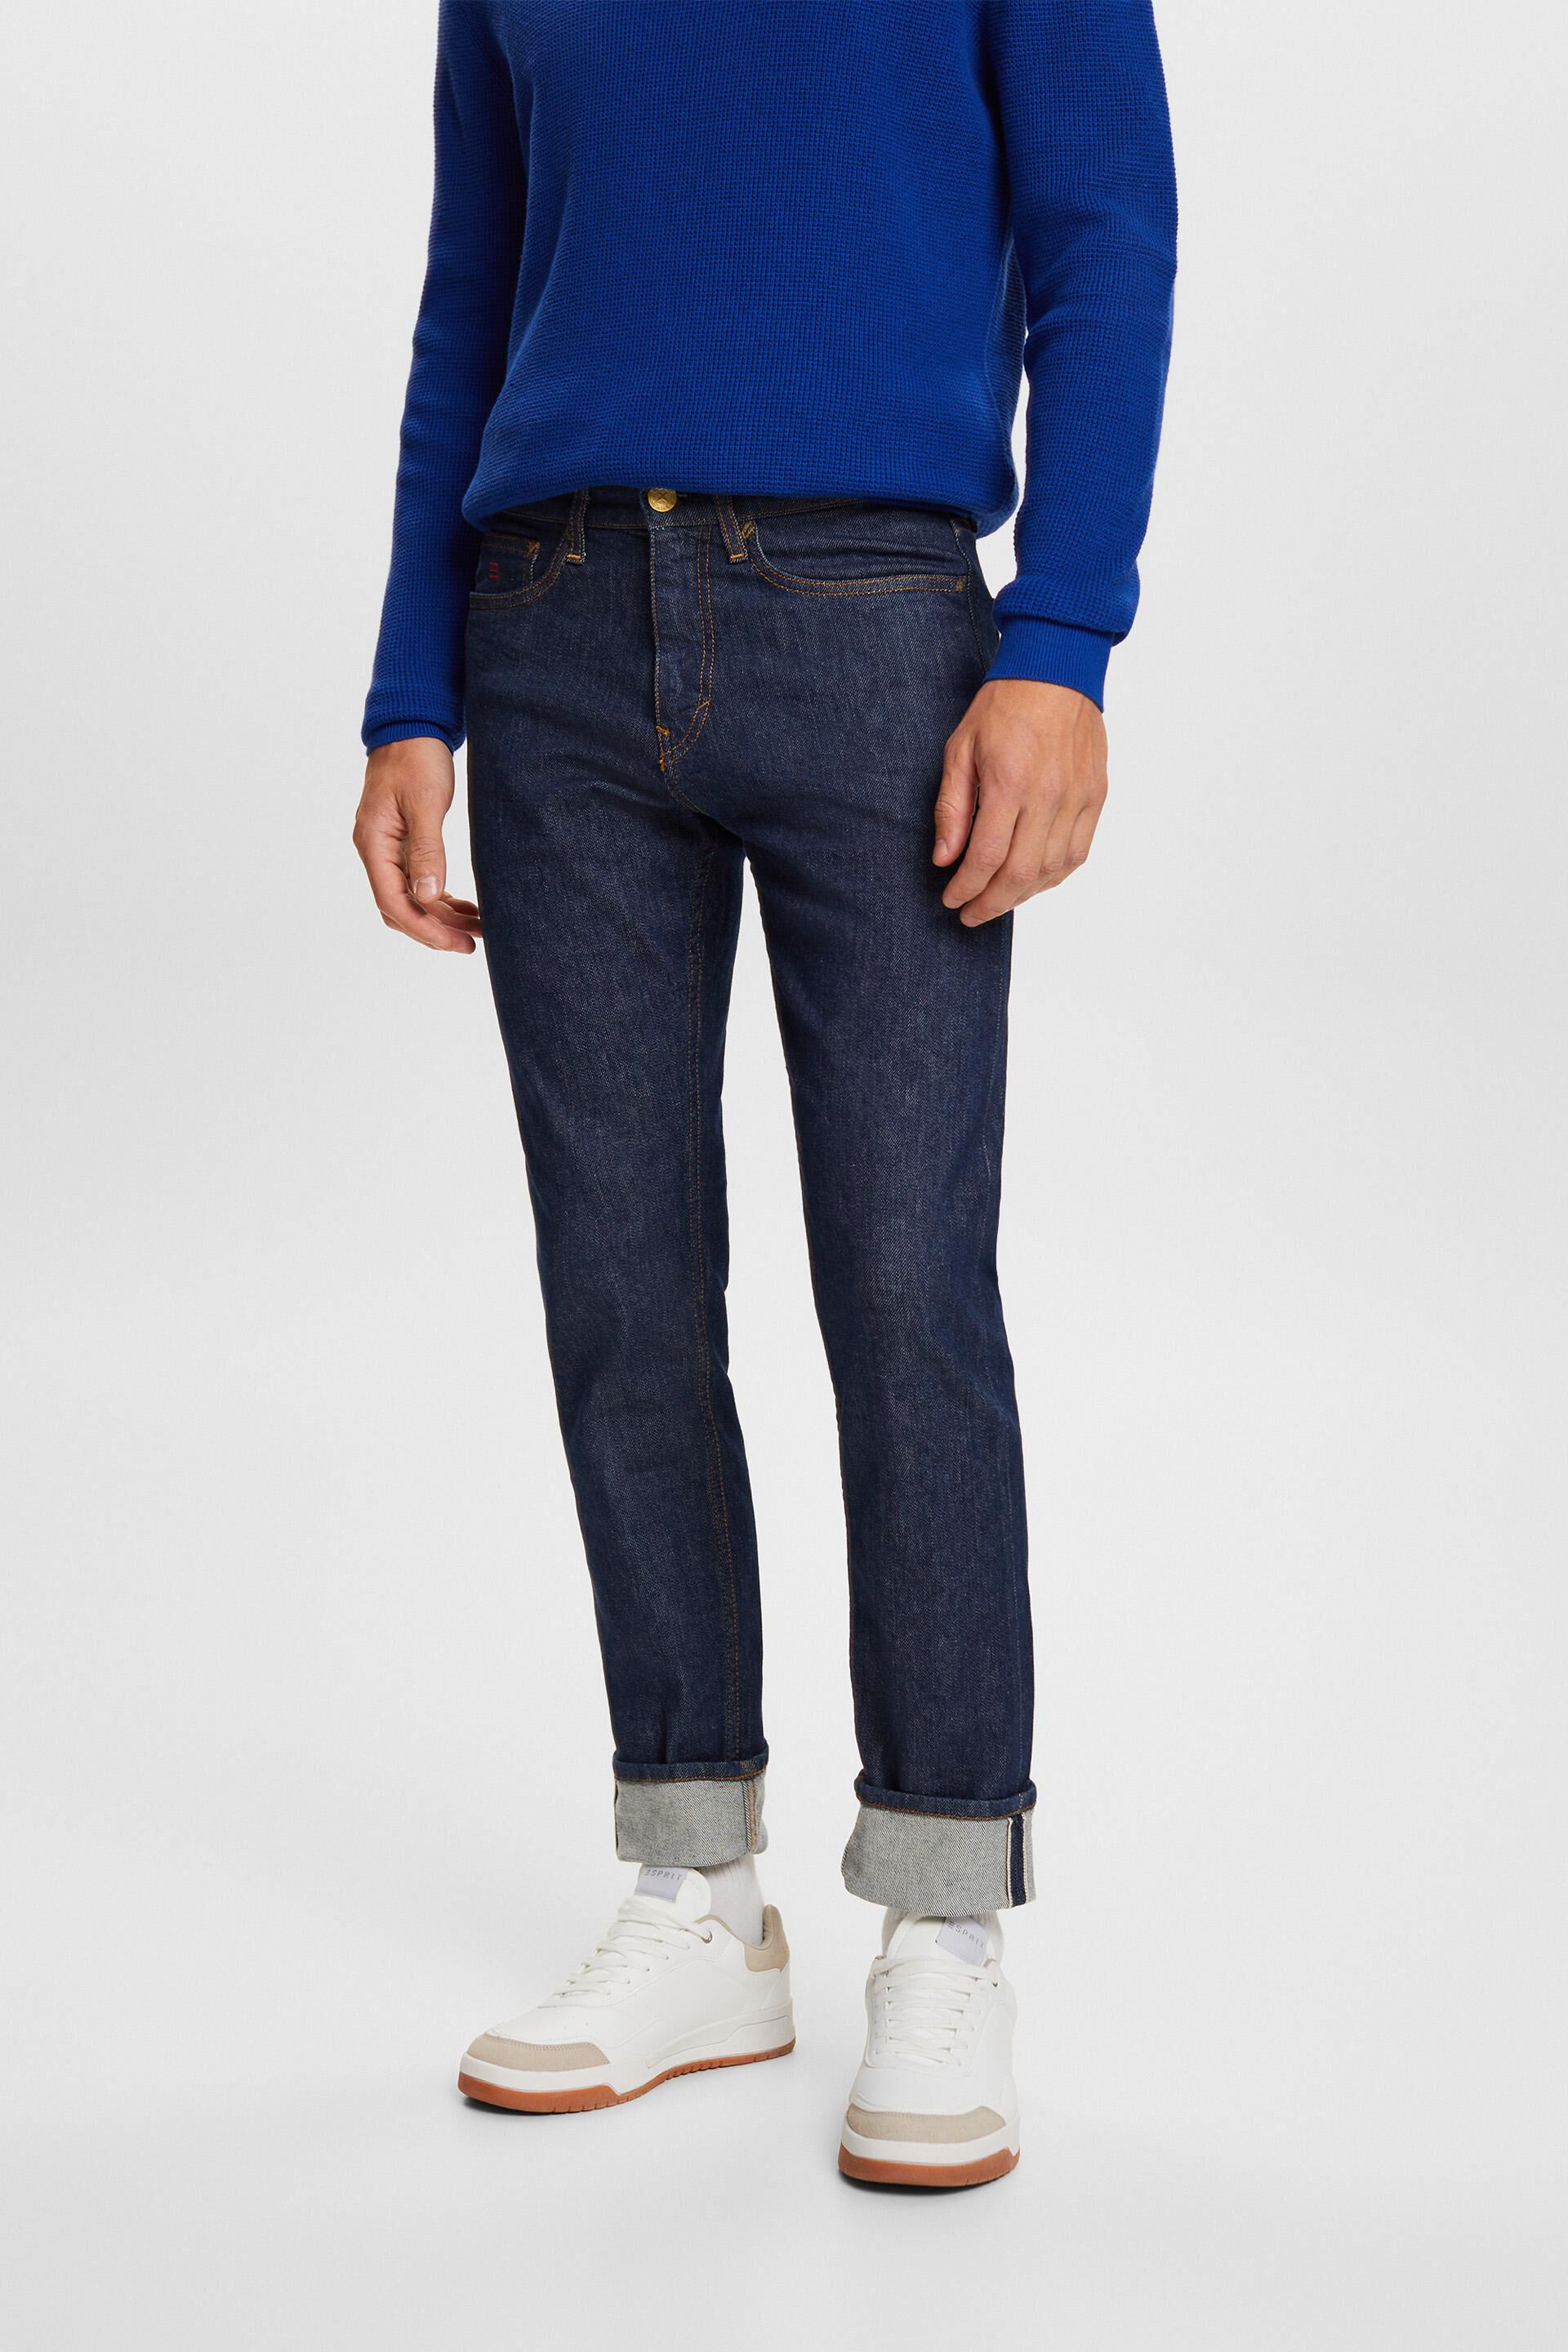 Esprit Premium slim with jeans selvedge fit